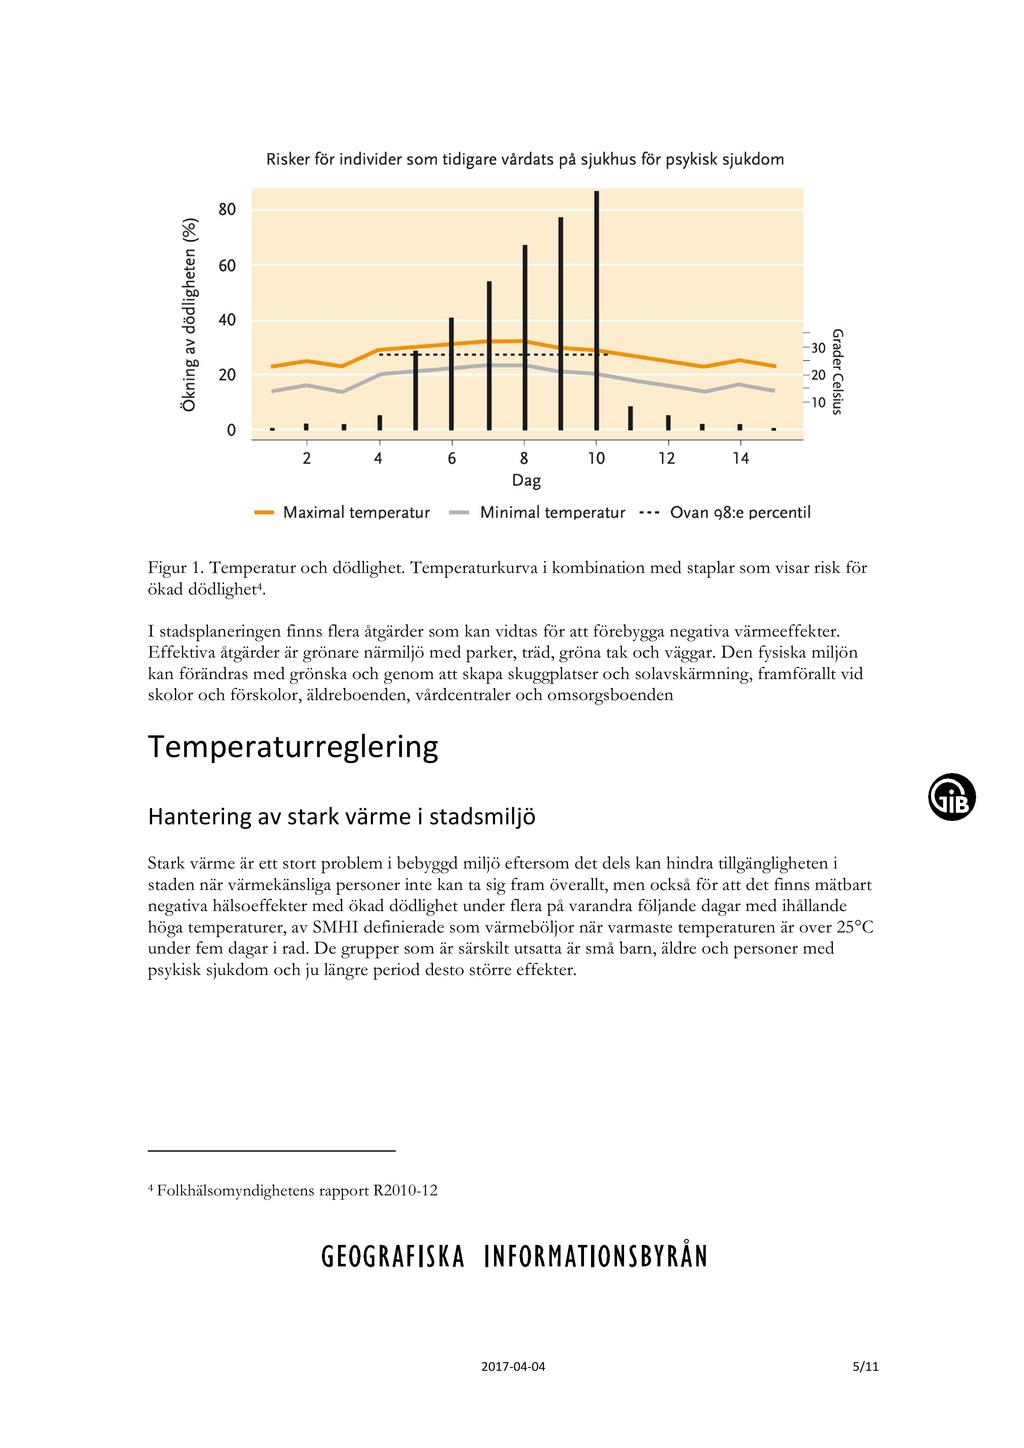 Figur 1. Temperatur och dödlighet. Temperaturkurva i kombination med staplar som visar risk för ökad dödlighet 4.